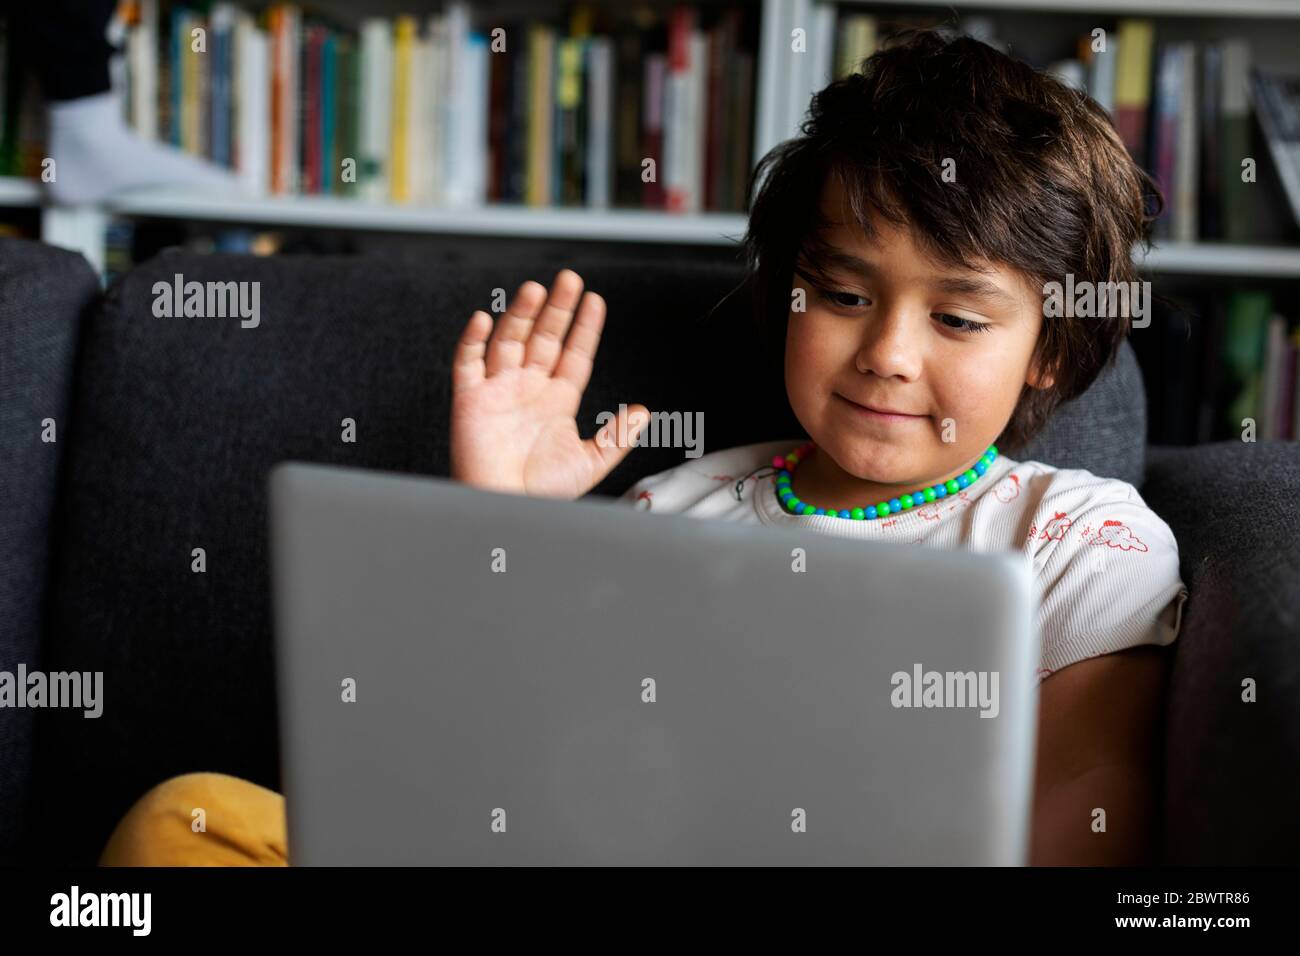 Un adorable garçon agite tout en utilisant un ordinateur portable pour passer des appels vidéo dans le salon Banque D'Images